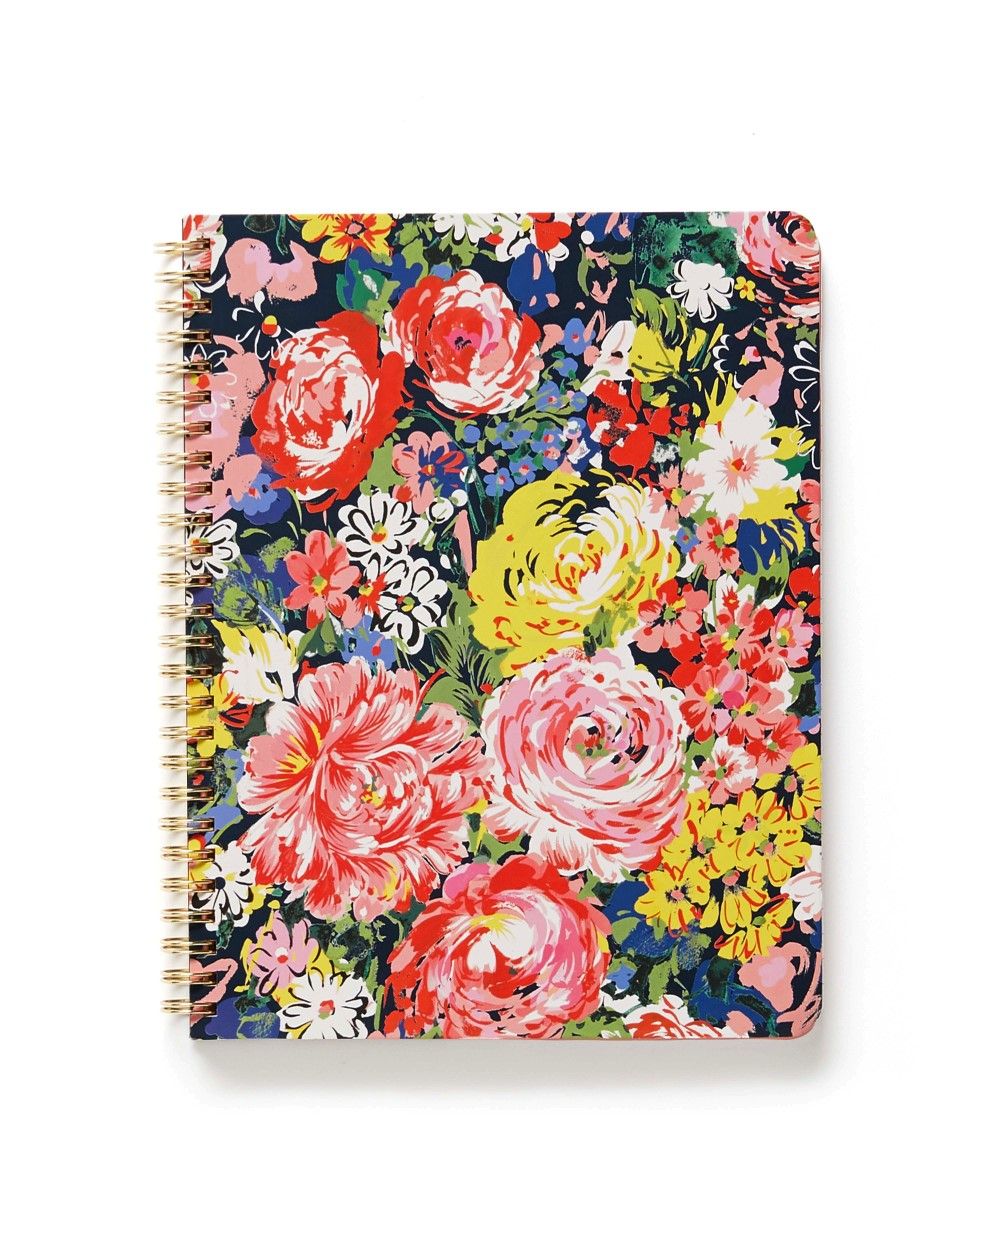 دفتر ملاحظات راف درافت صغير عليه صور لزهور